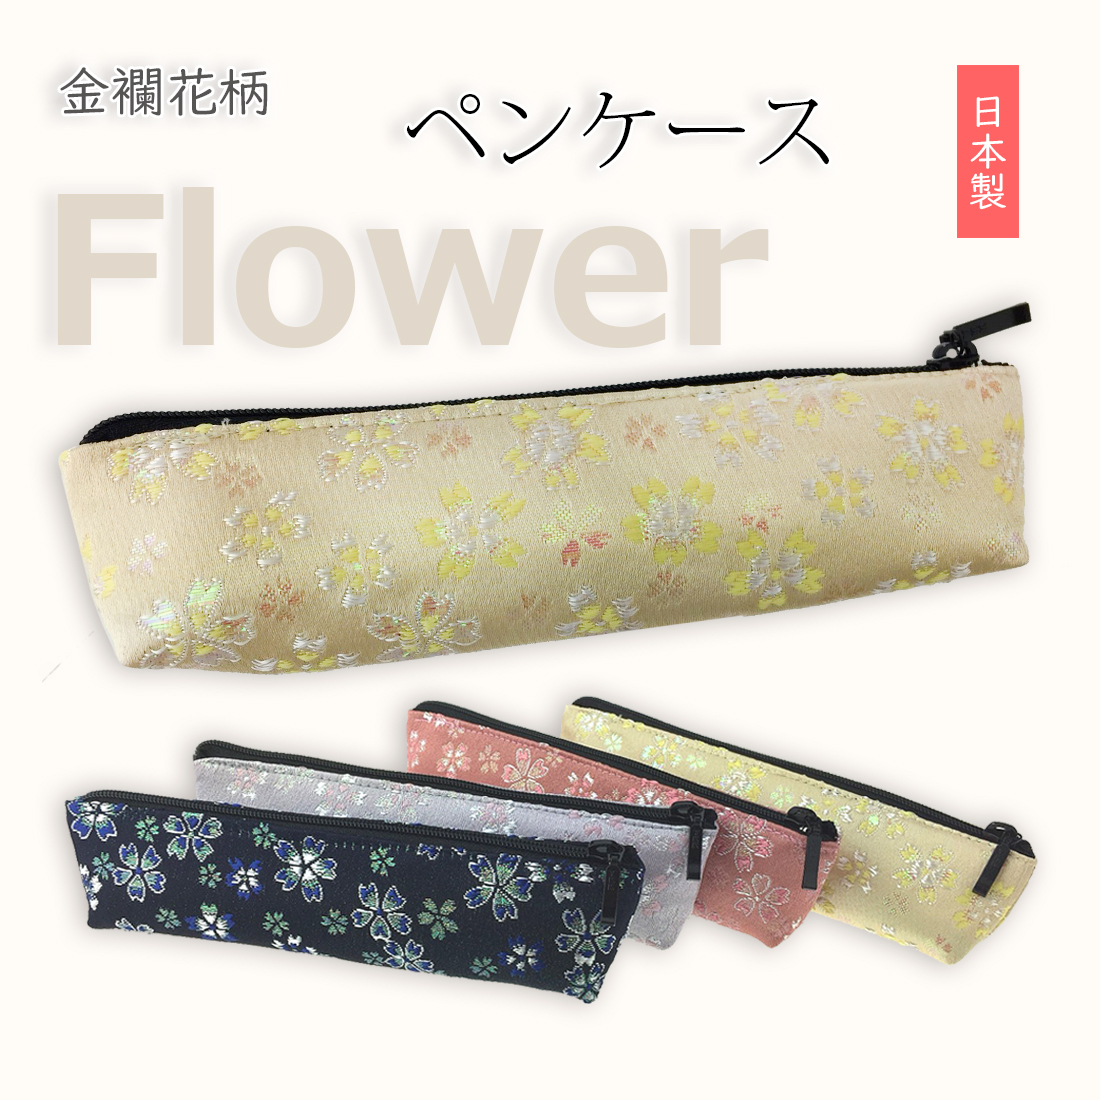 美しい花柄・金襴布の生地で仕立てた、日本製ペンケースです